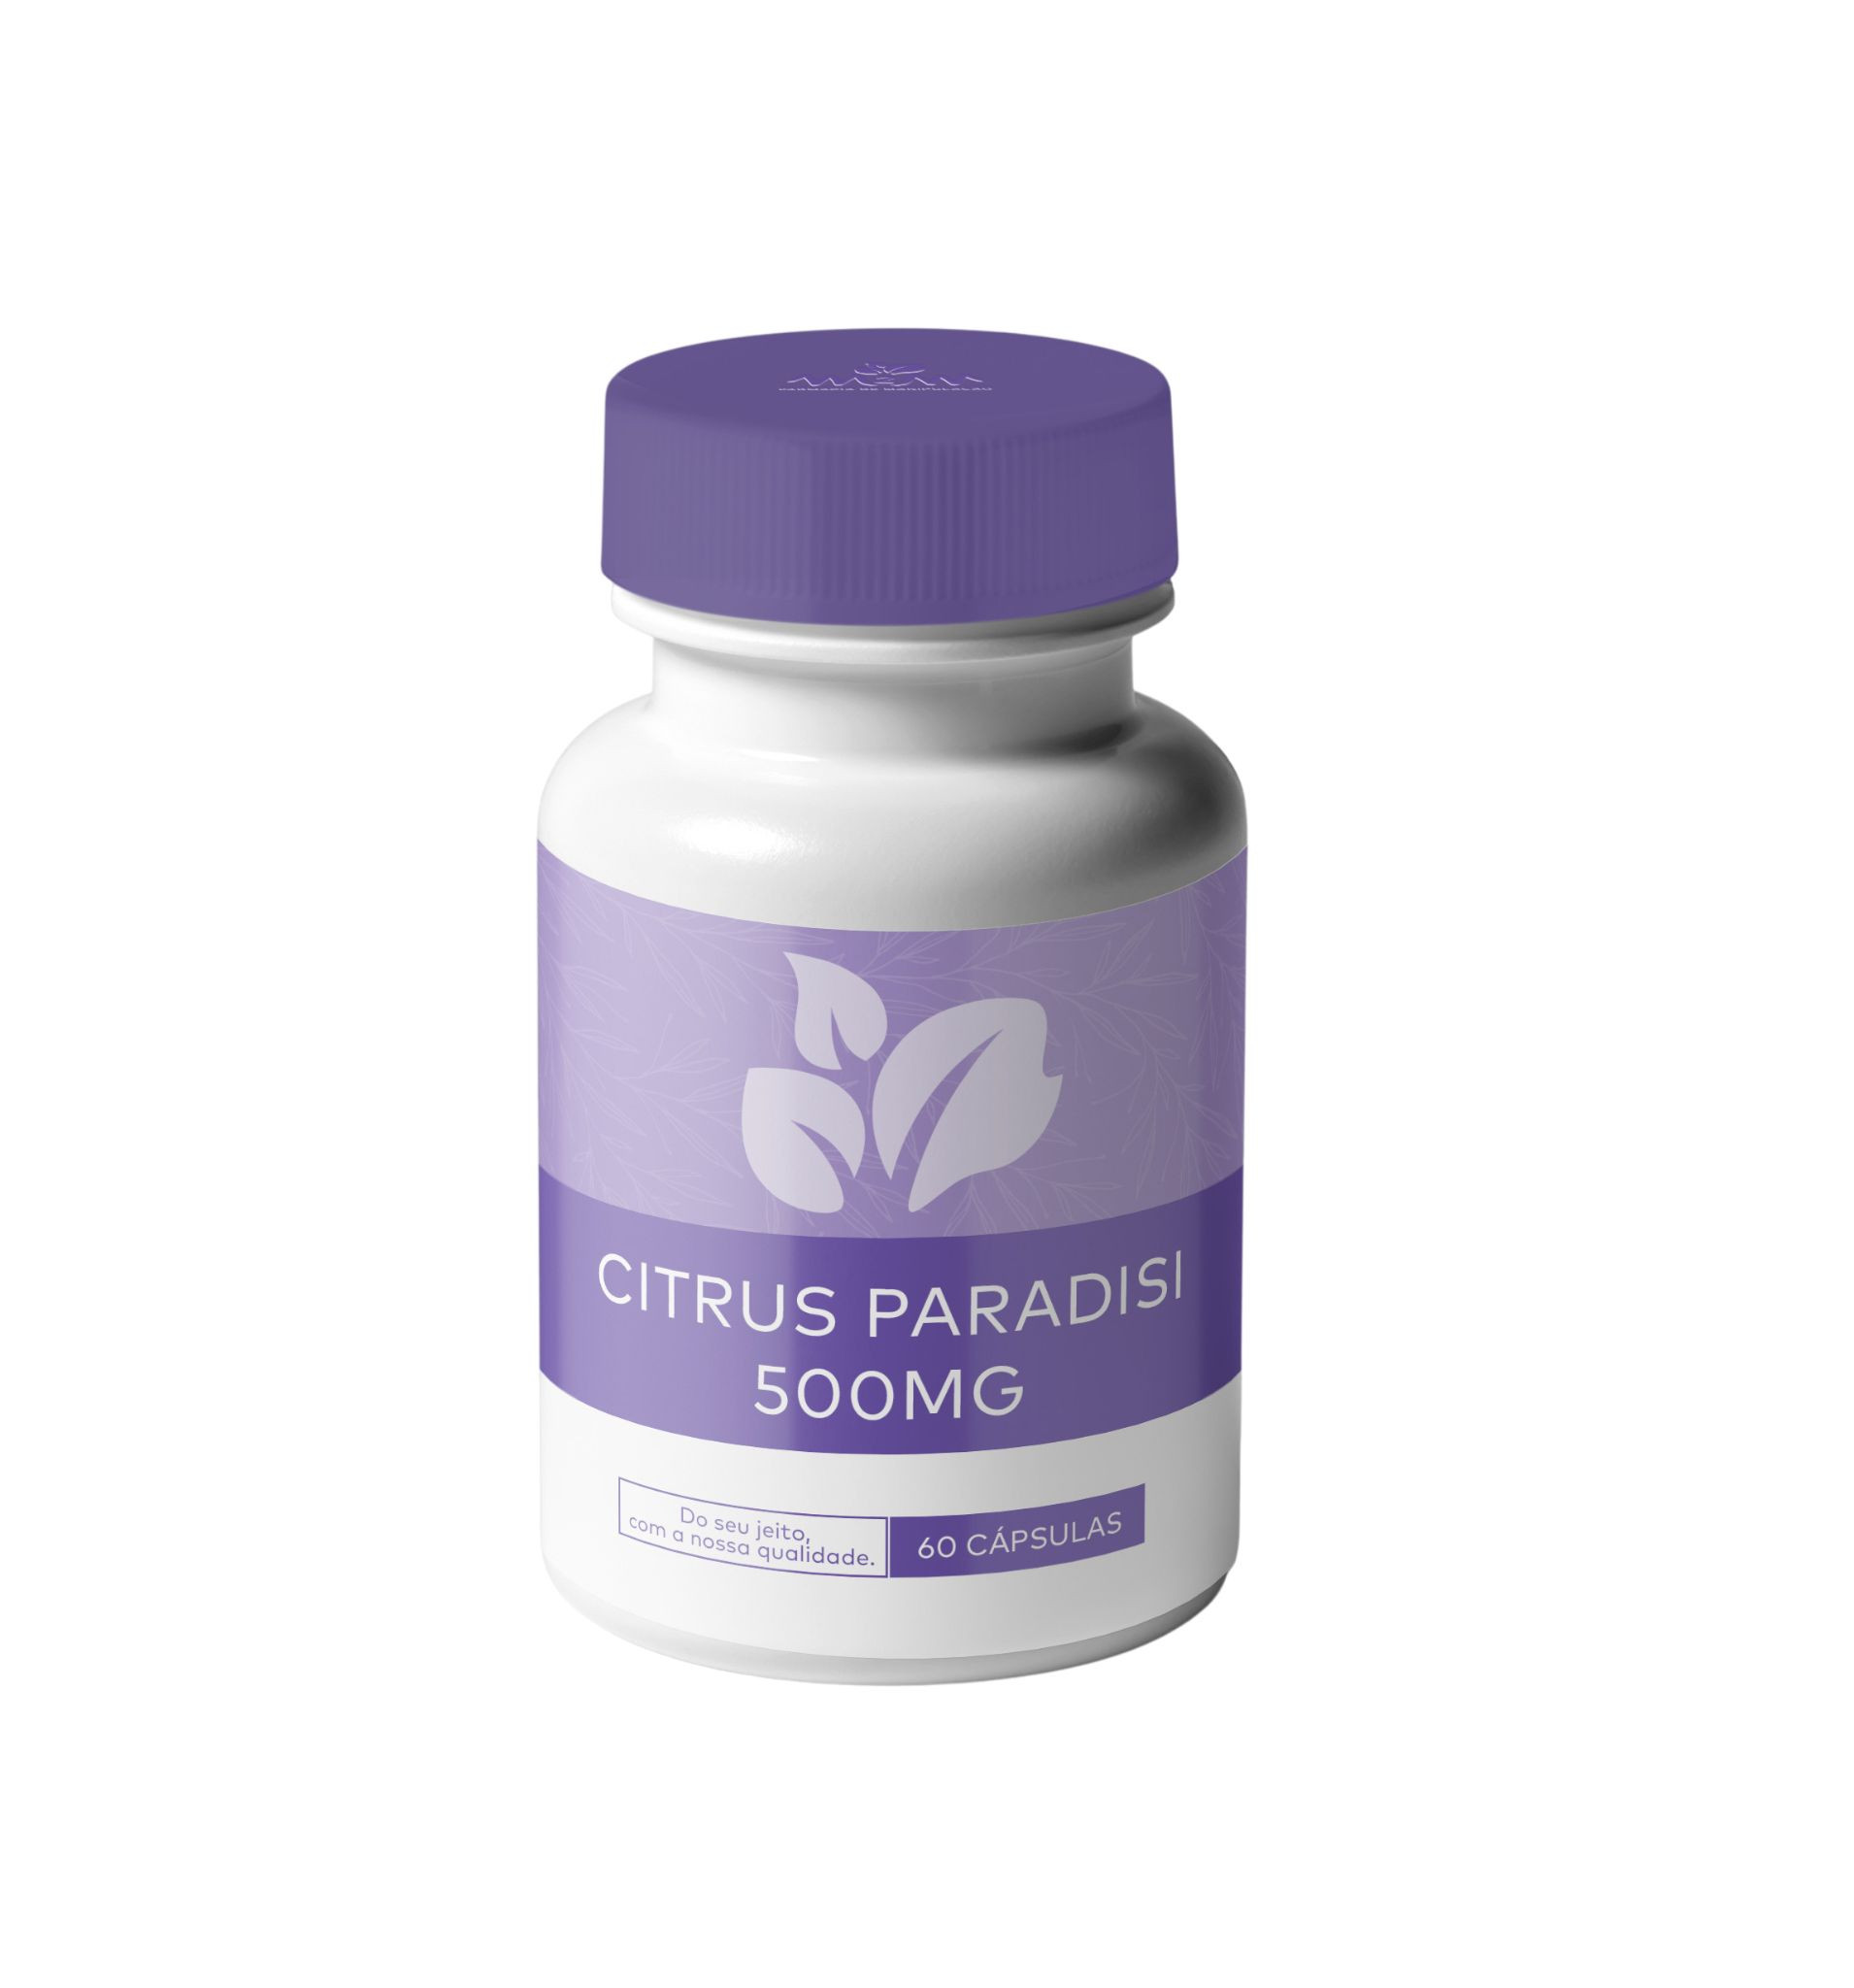 citrus-paradisi-500mg-capsulas-com-acao-antioxidante-antilipemica-e-antiaterogenica